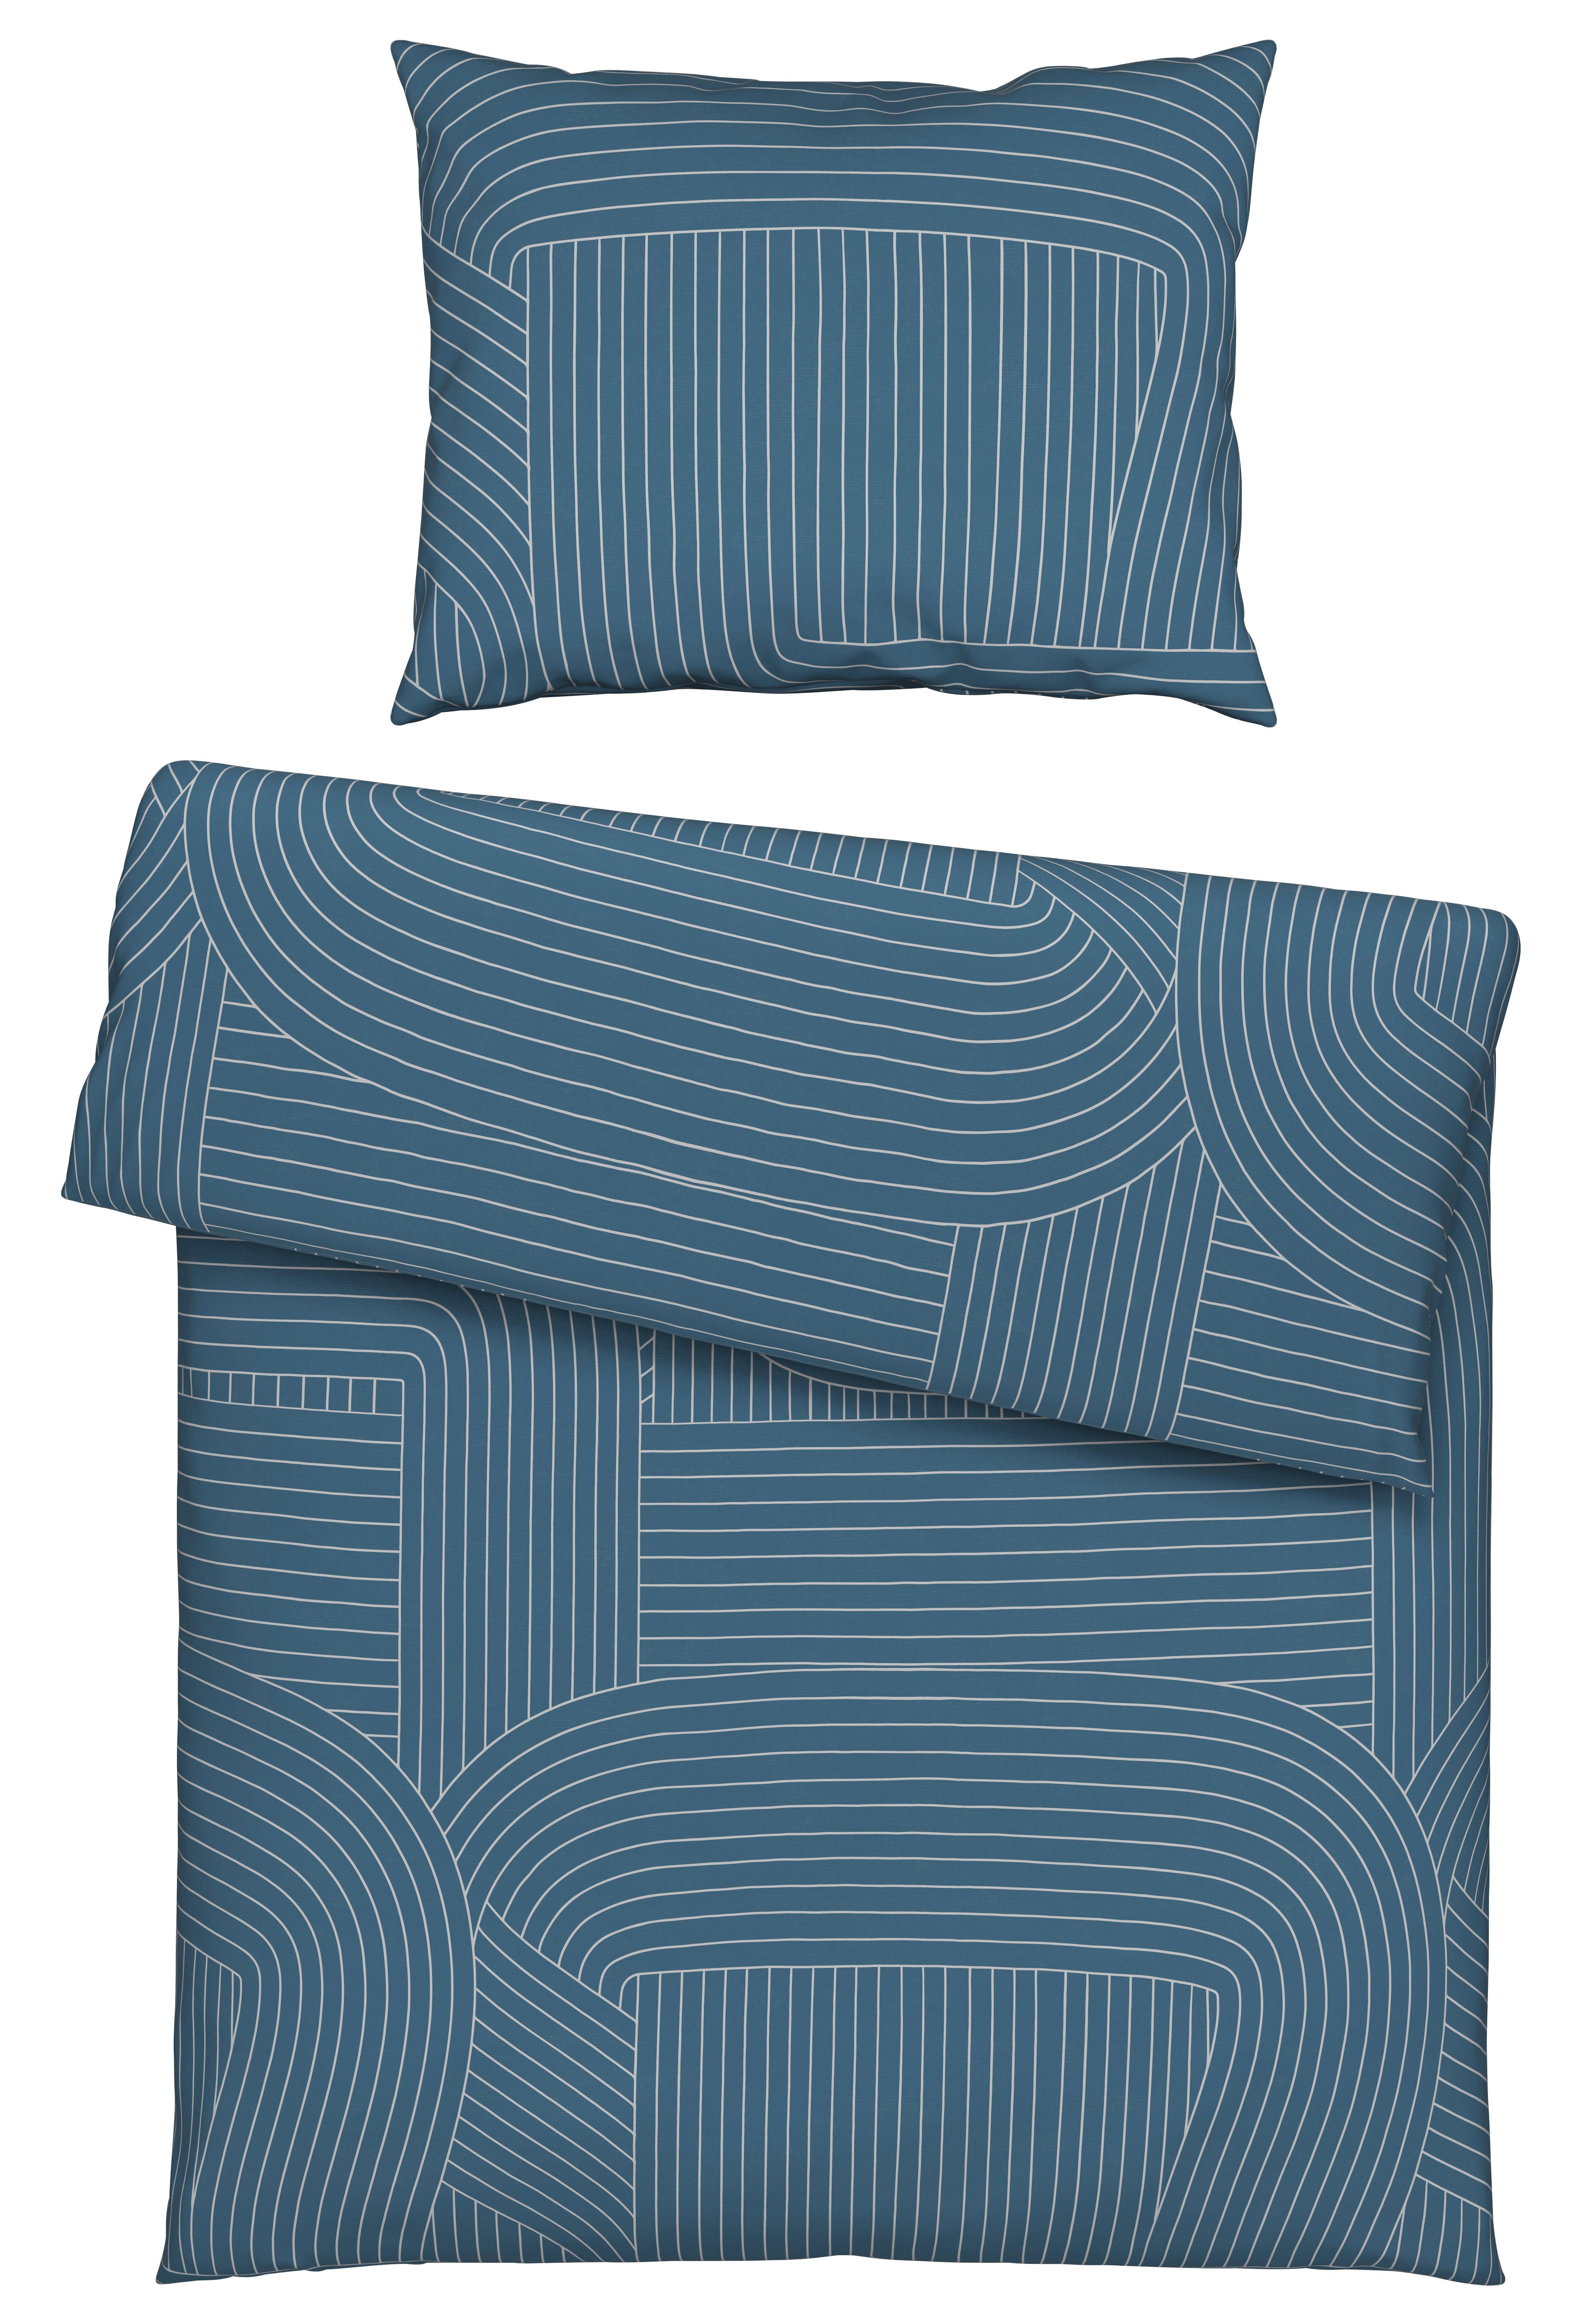 Povlečení Scribble, 140/200cm - modrá, Moderní, textil (140/200cm) - Modern Living